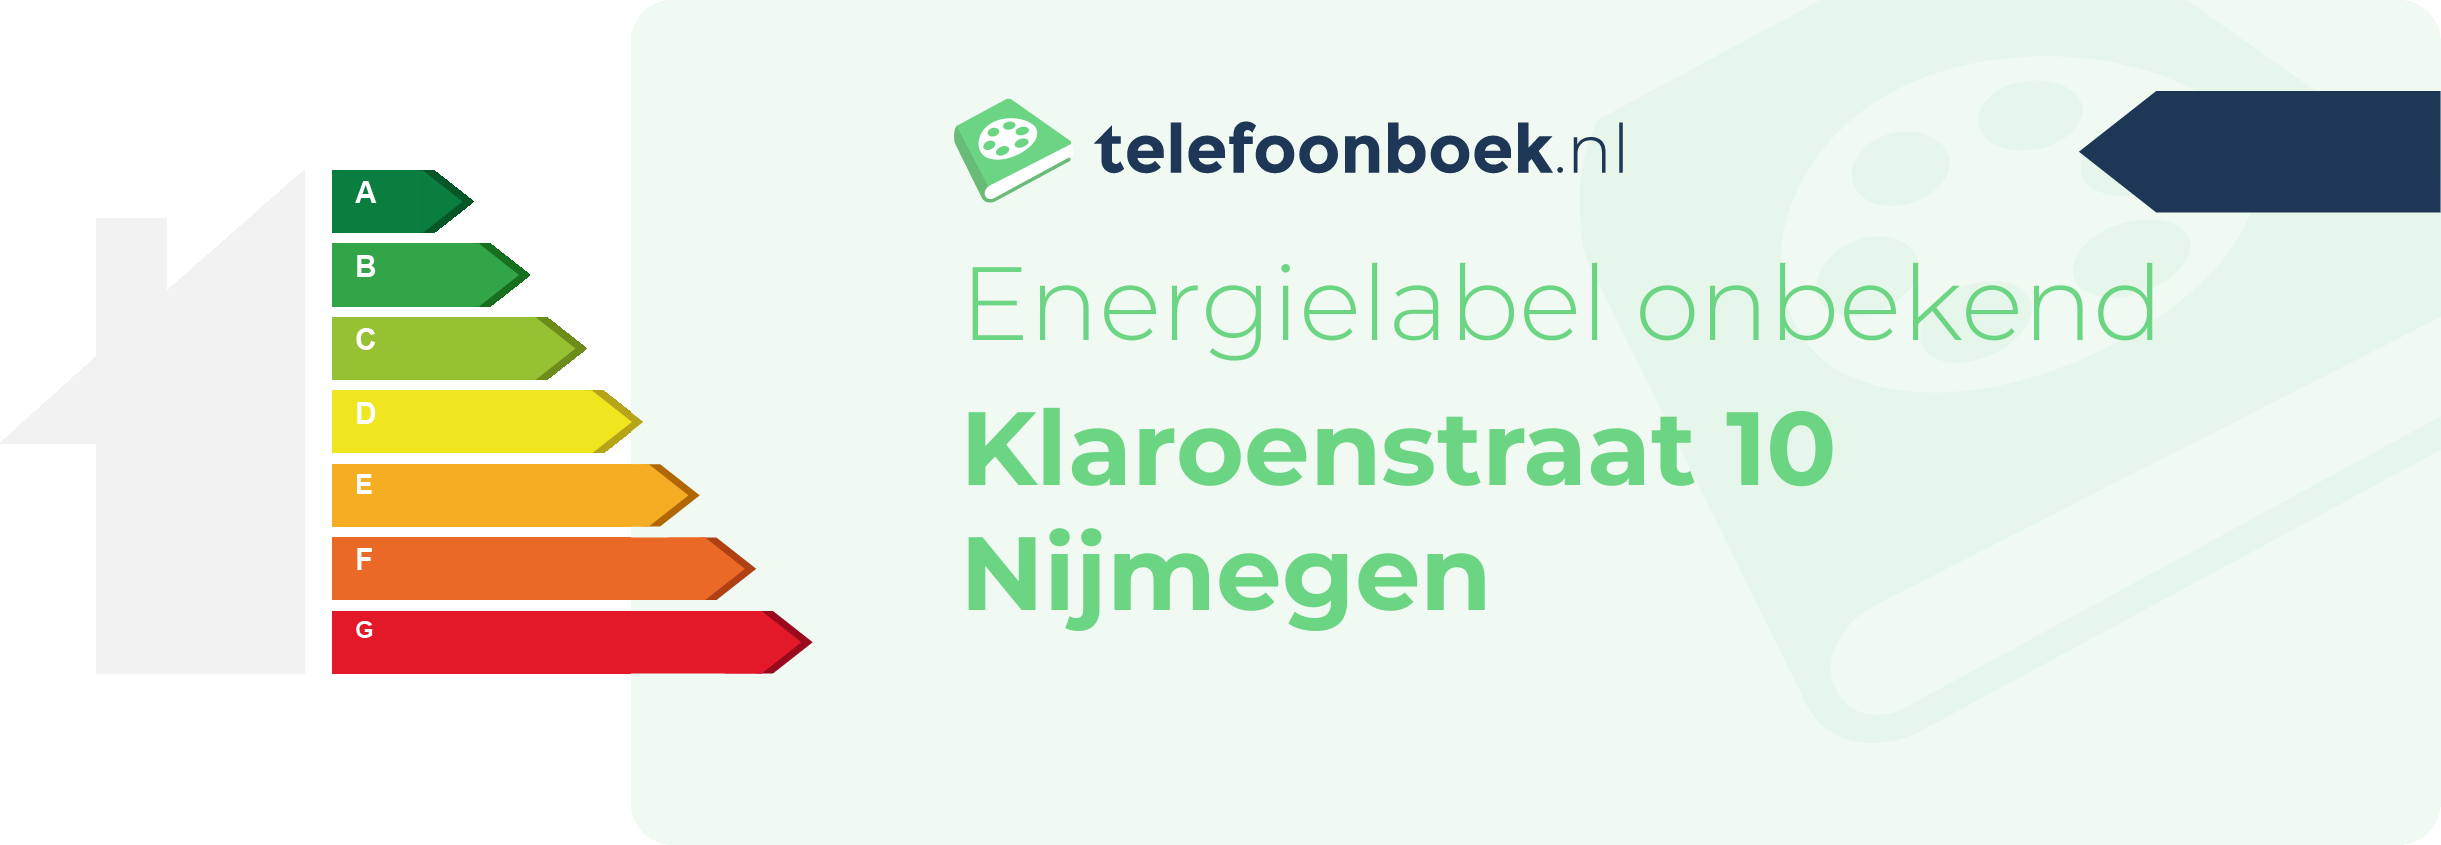 Energielabel Klaroenstraat 10 Nijmegen